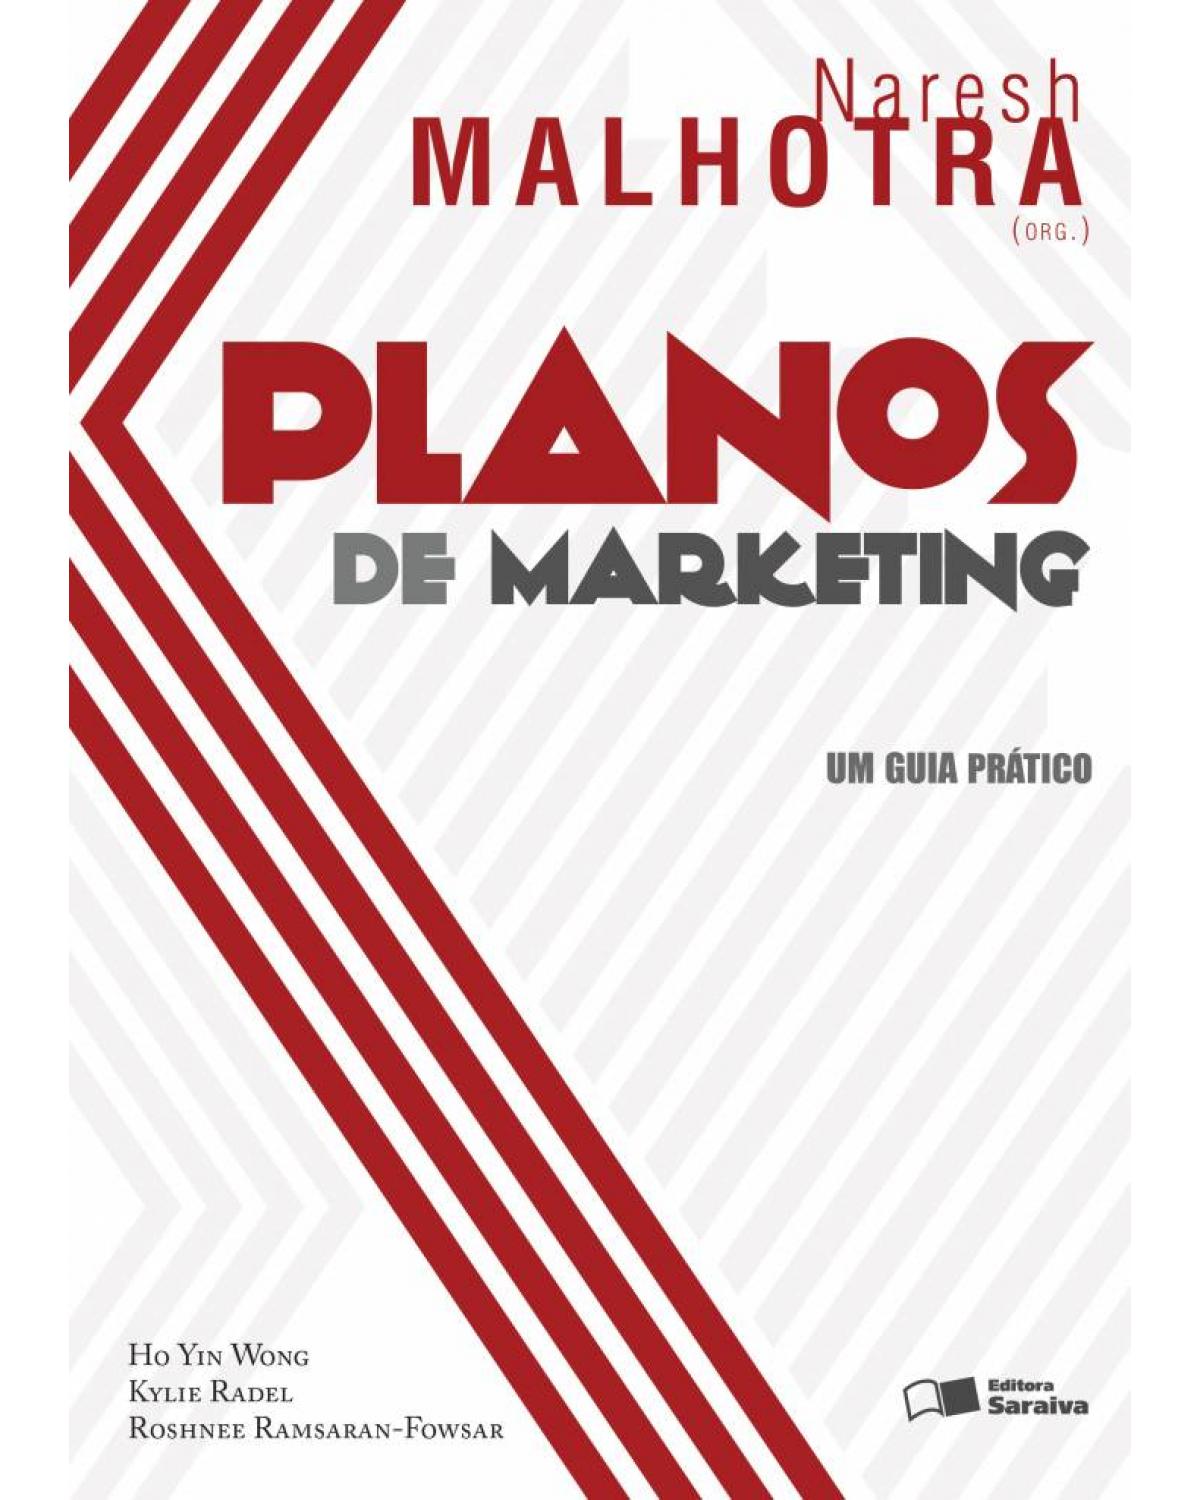 Planos de marketing - um guia prático - 1ª Edição | 2013